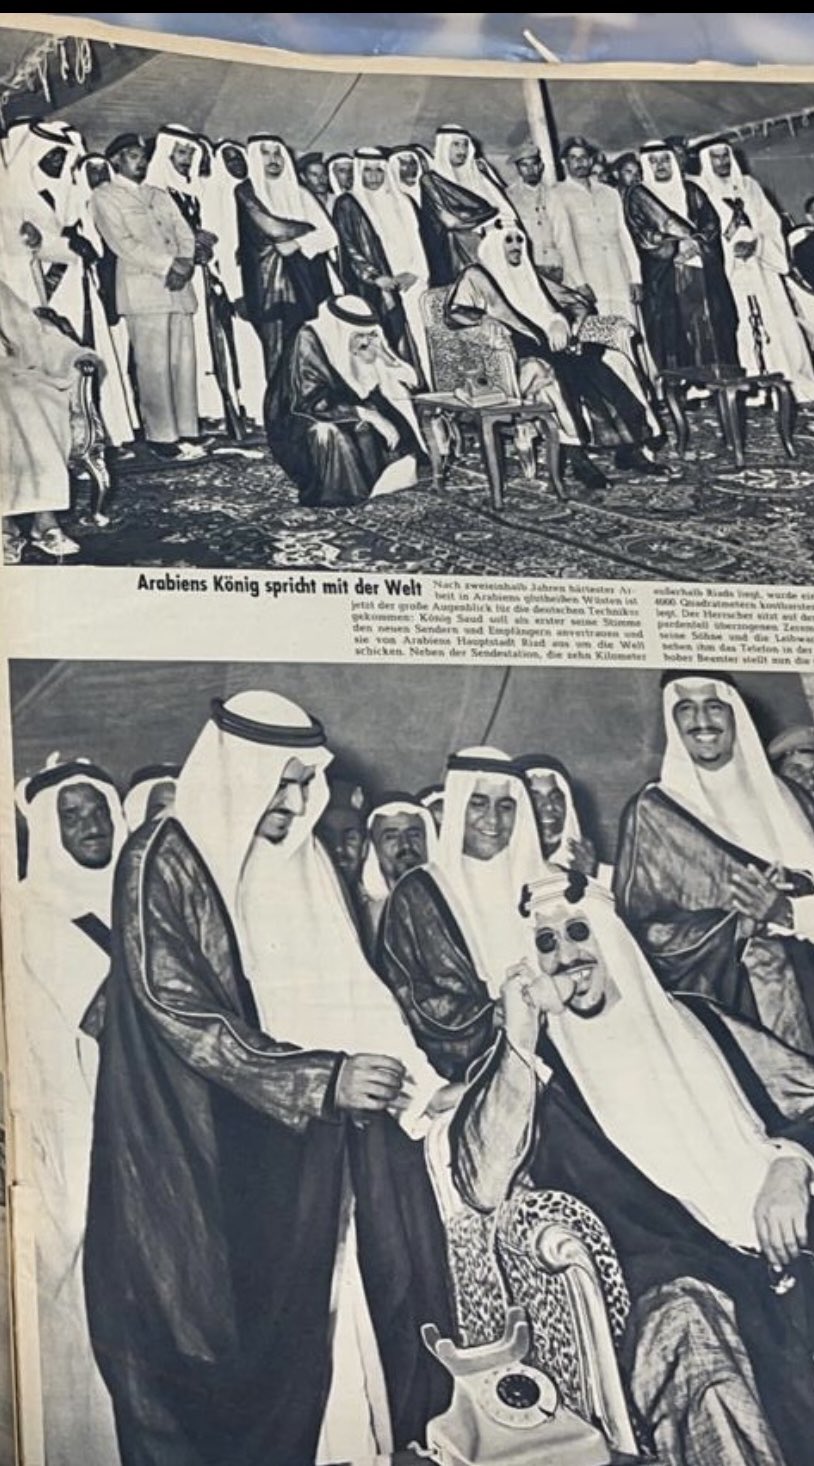 افتتاح الملك سعود لخط اللاسلكي و وزيرالمواصلات الأميرسلطان بن عبدالعزيز وأمير الرياض الملك سلمان والأمير سعد بن سعود